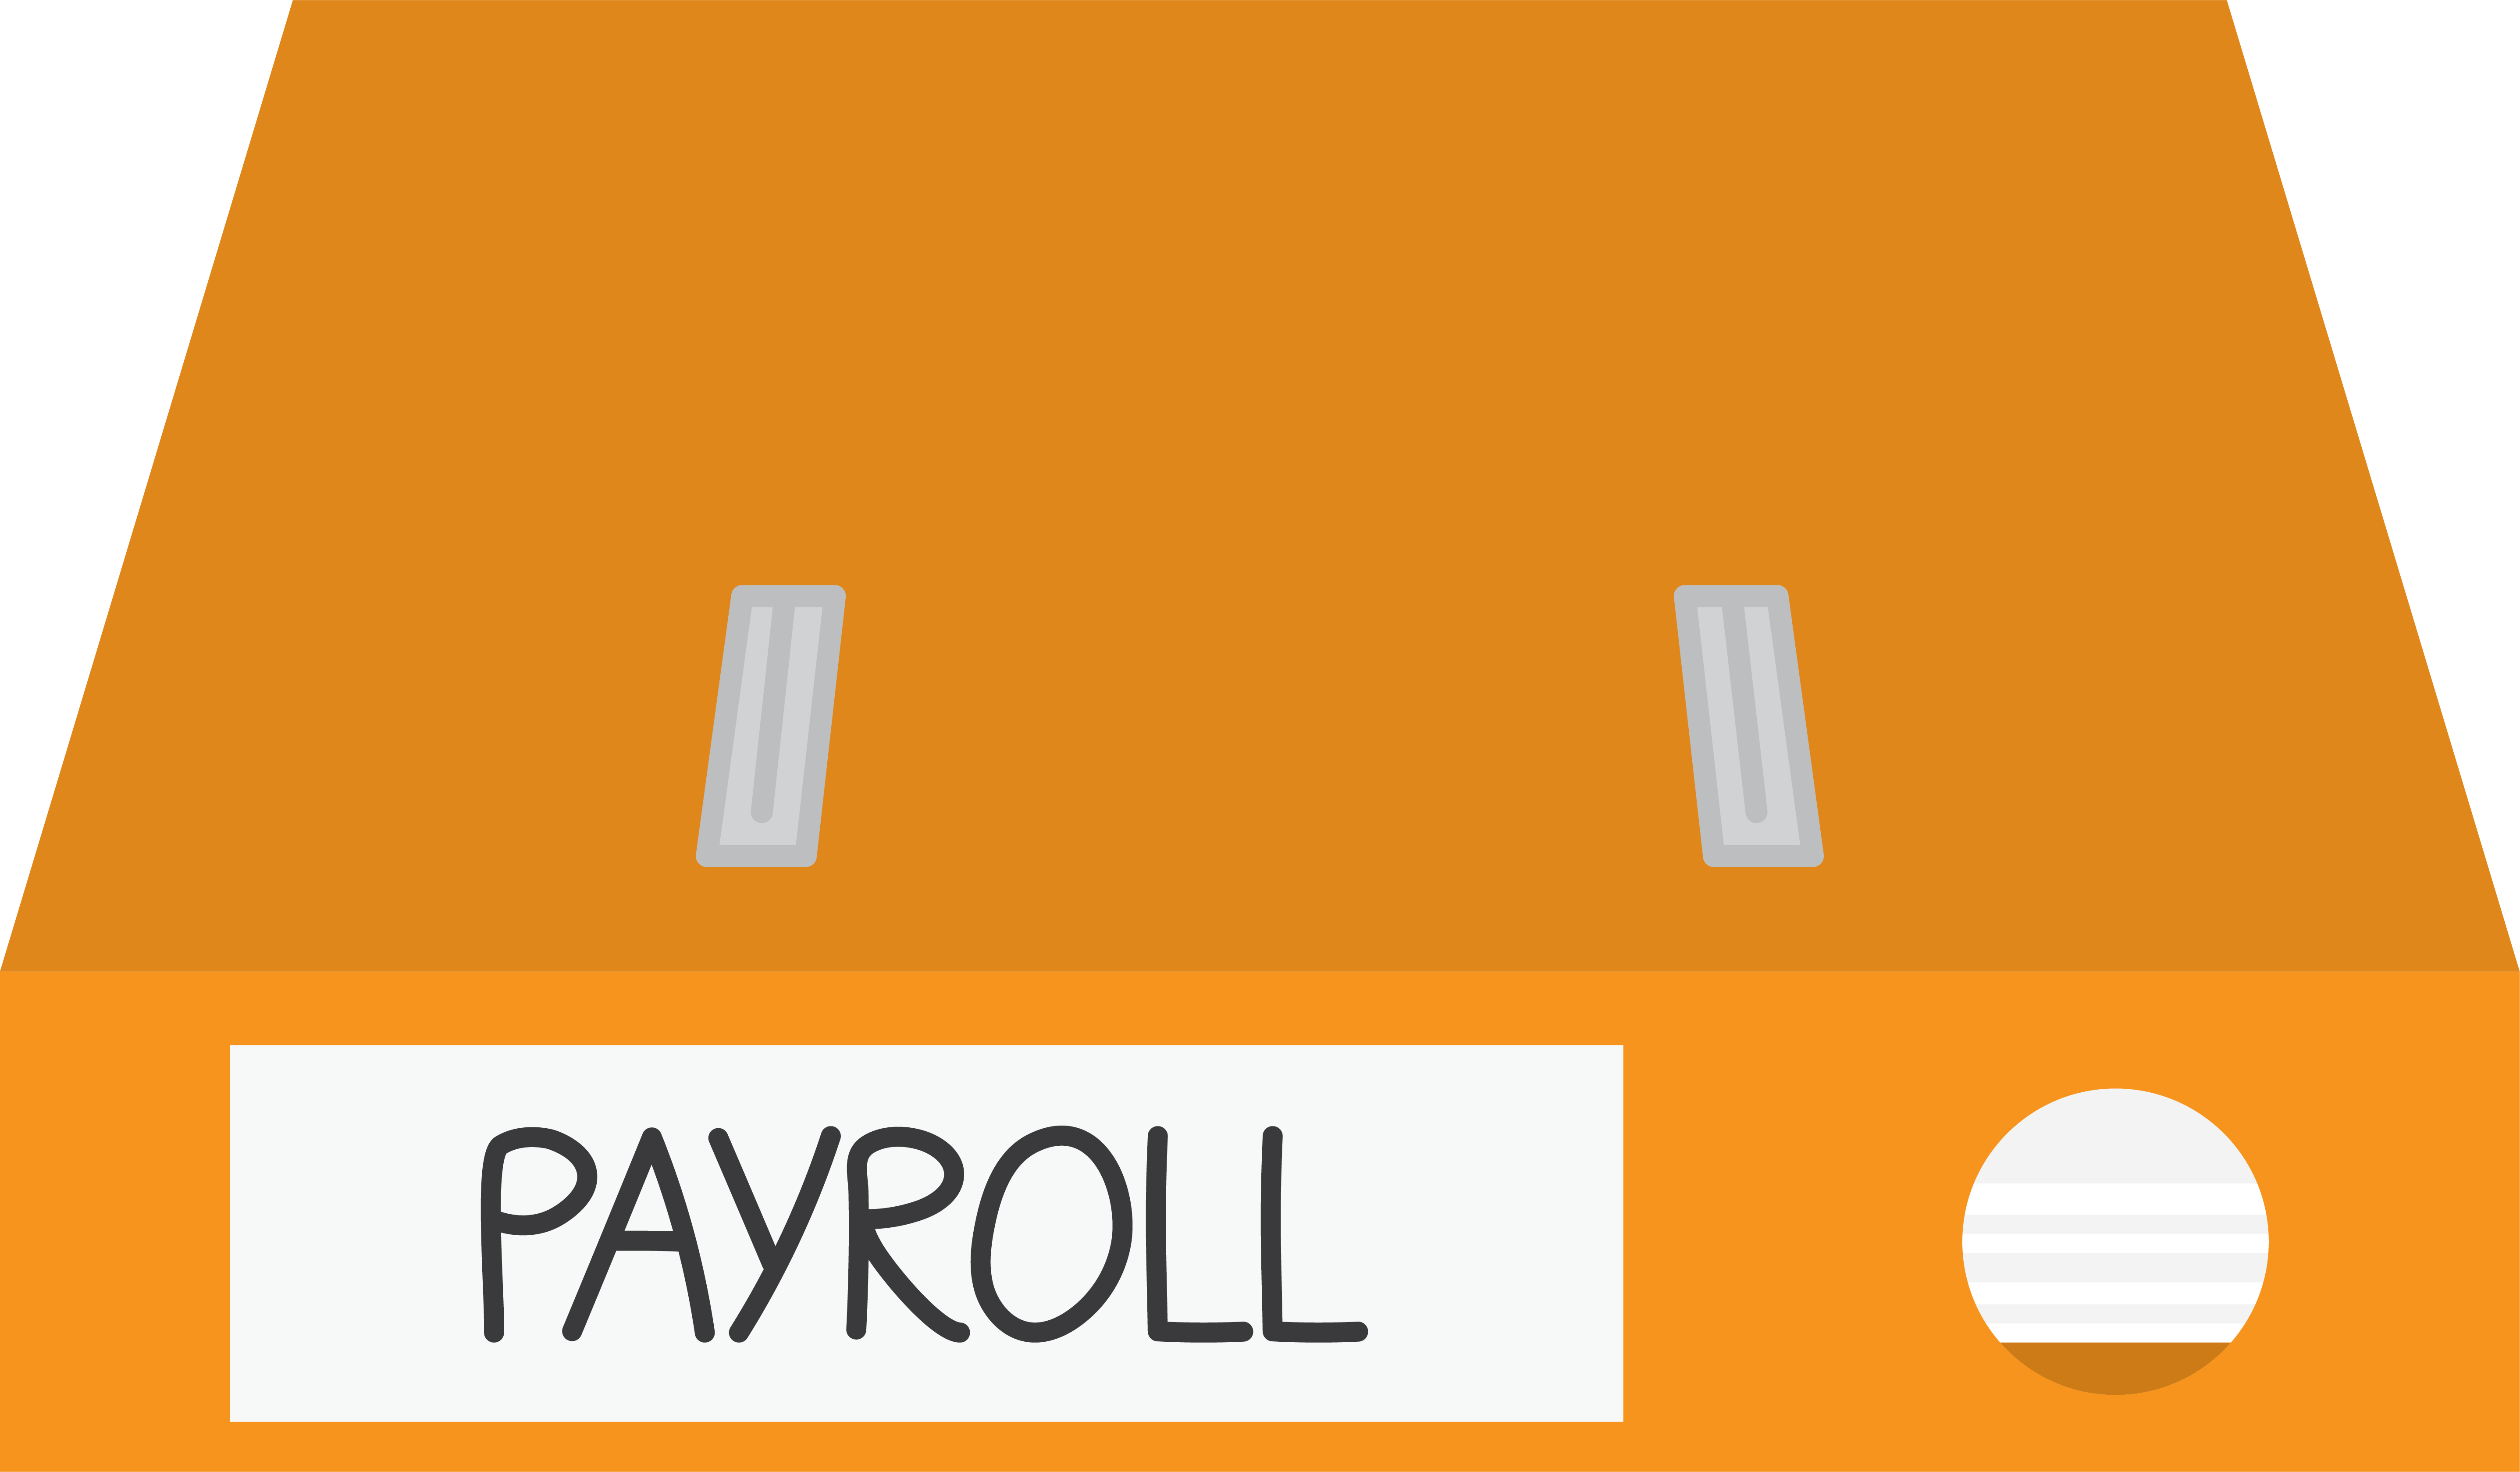 Payroll Binder.png detail image